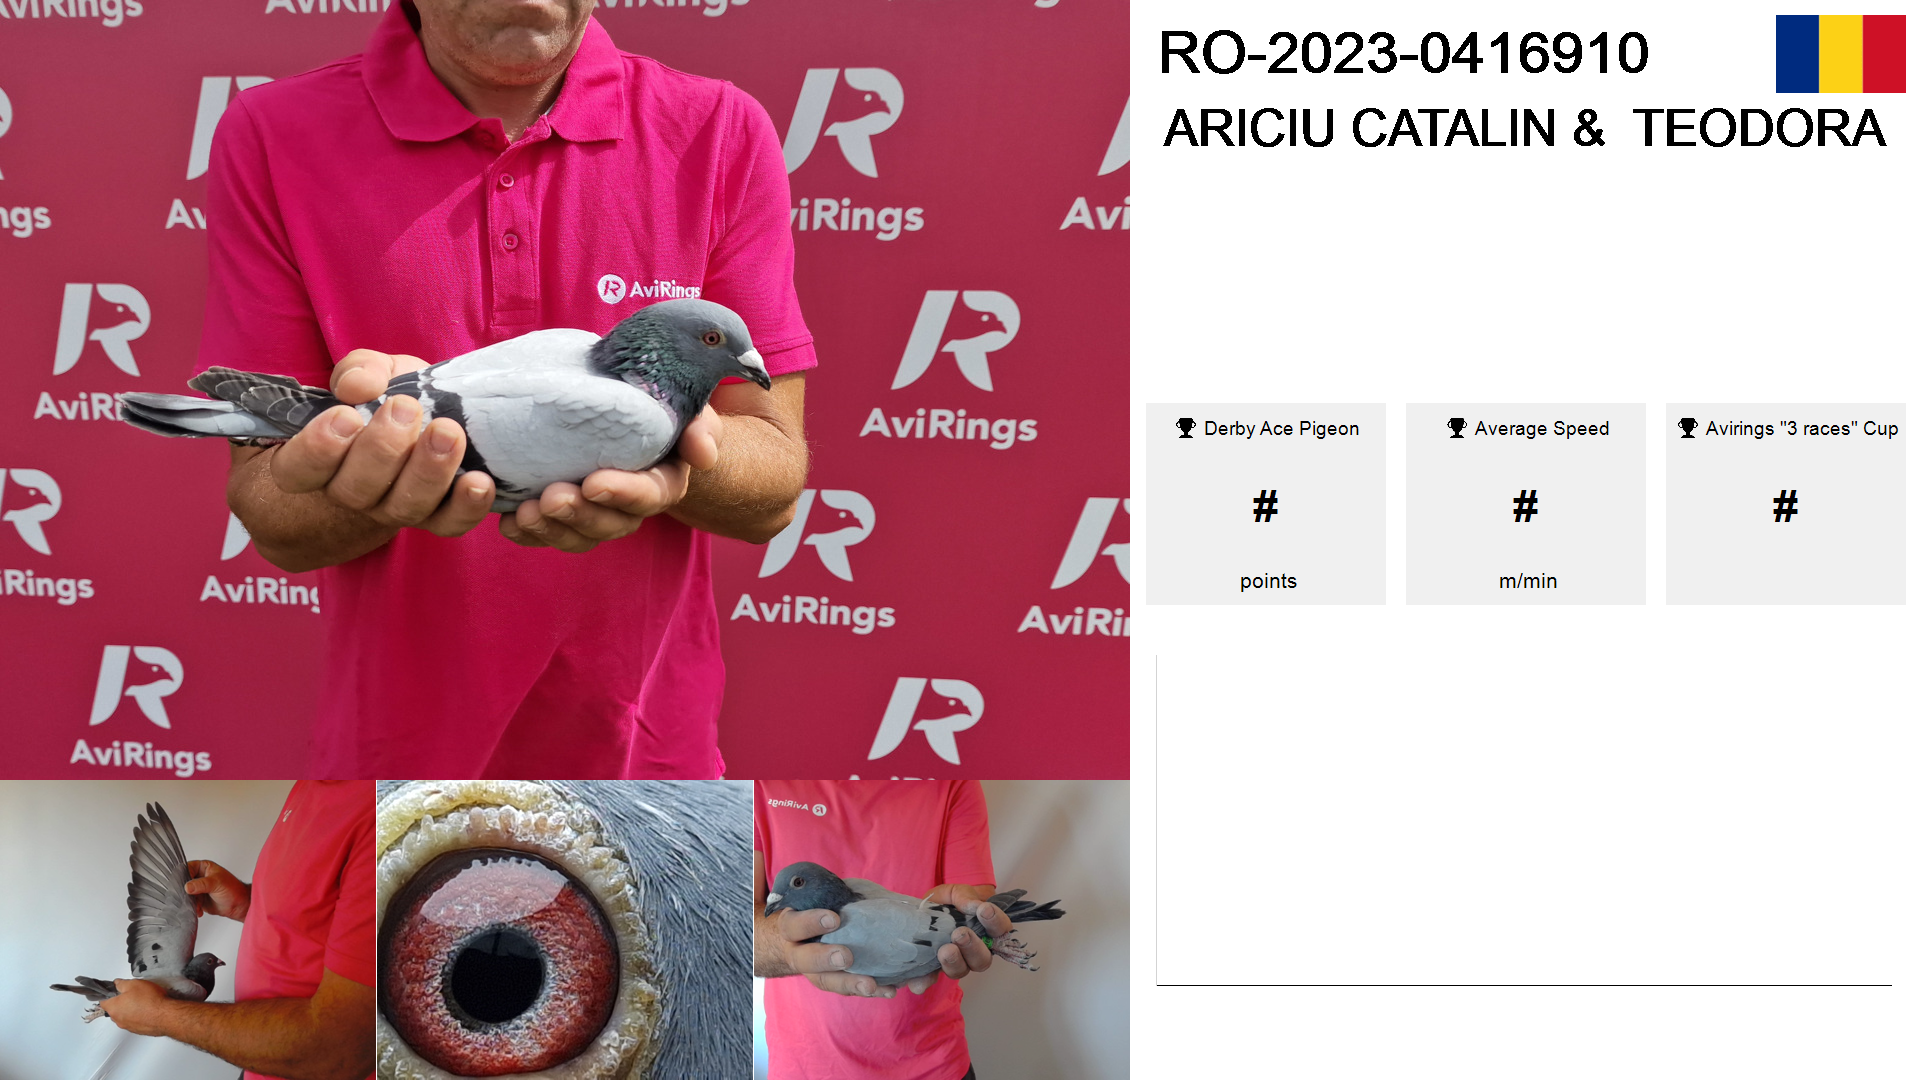 Pigeon summary image